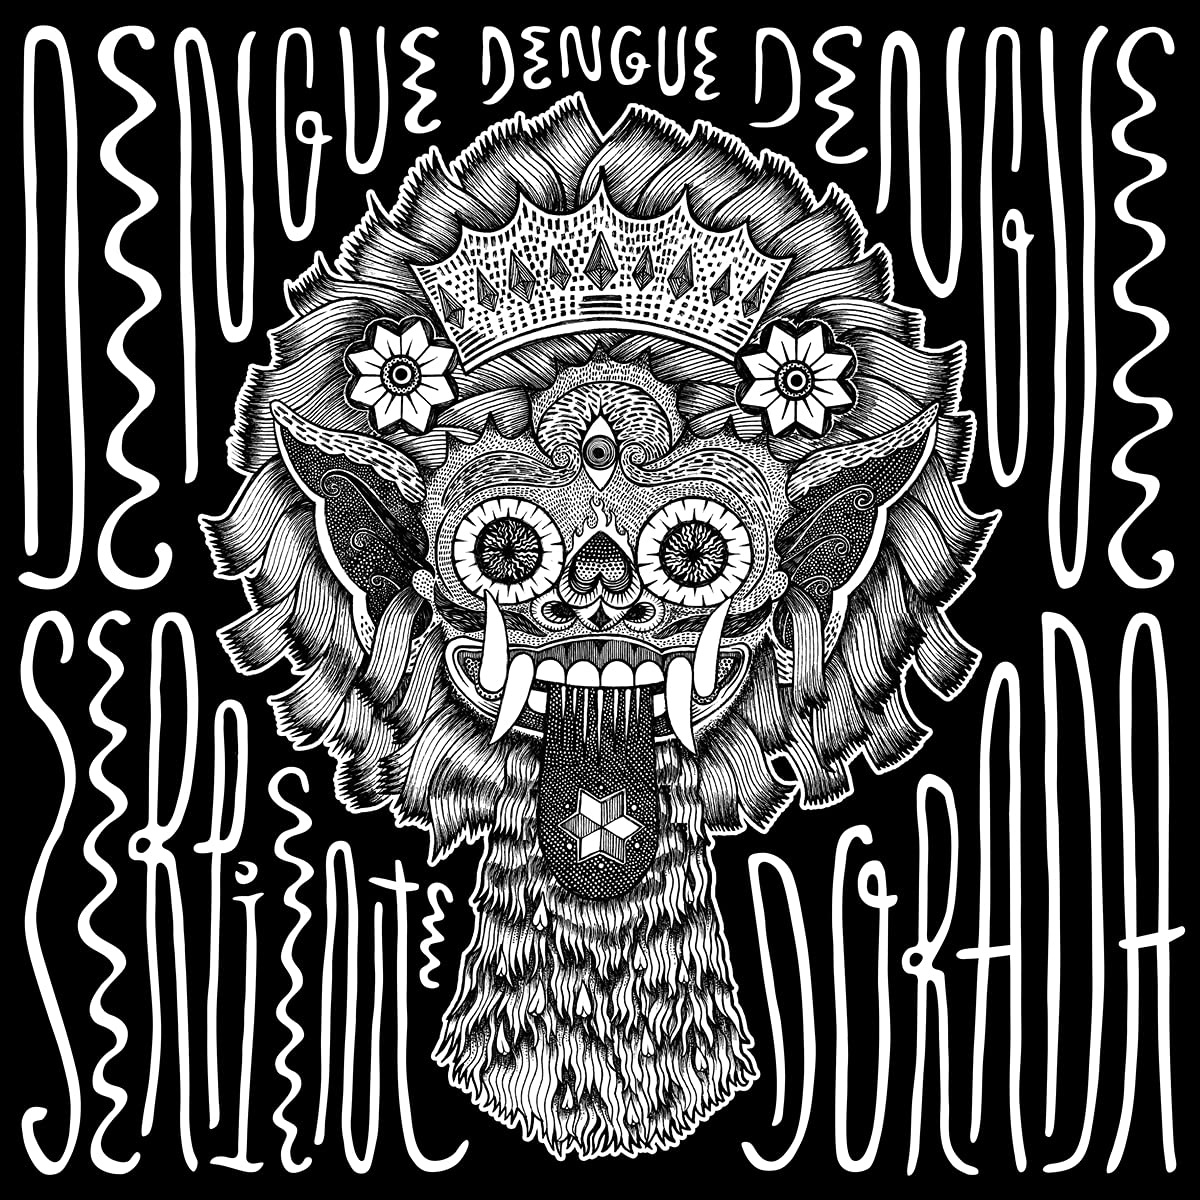 Dengue Dengue Dengue! - Serpiente Dorada vinyl cover